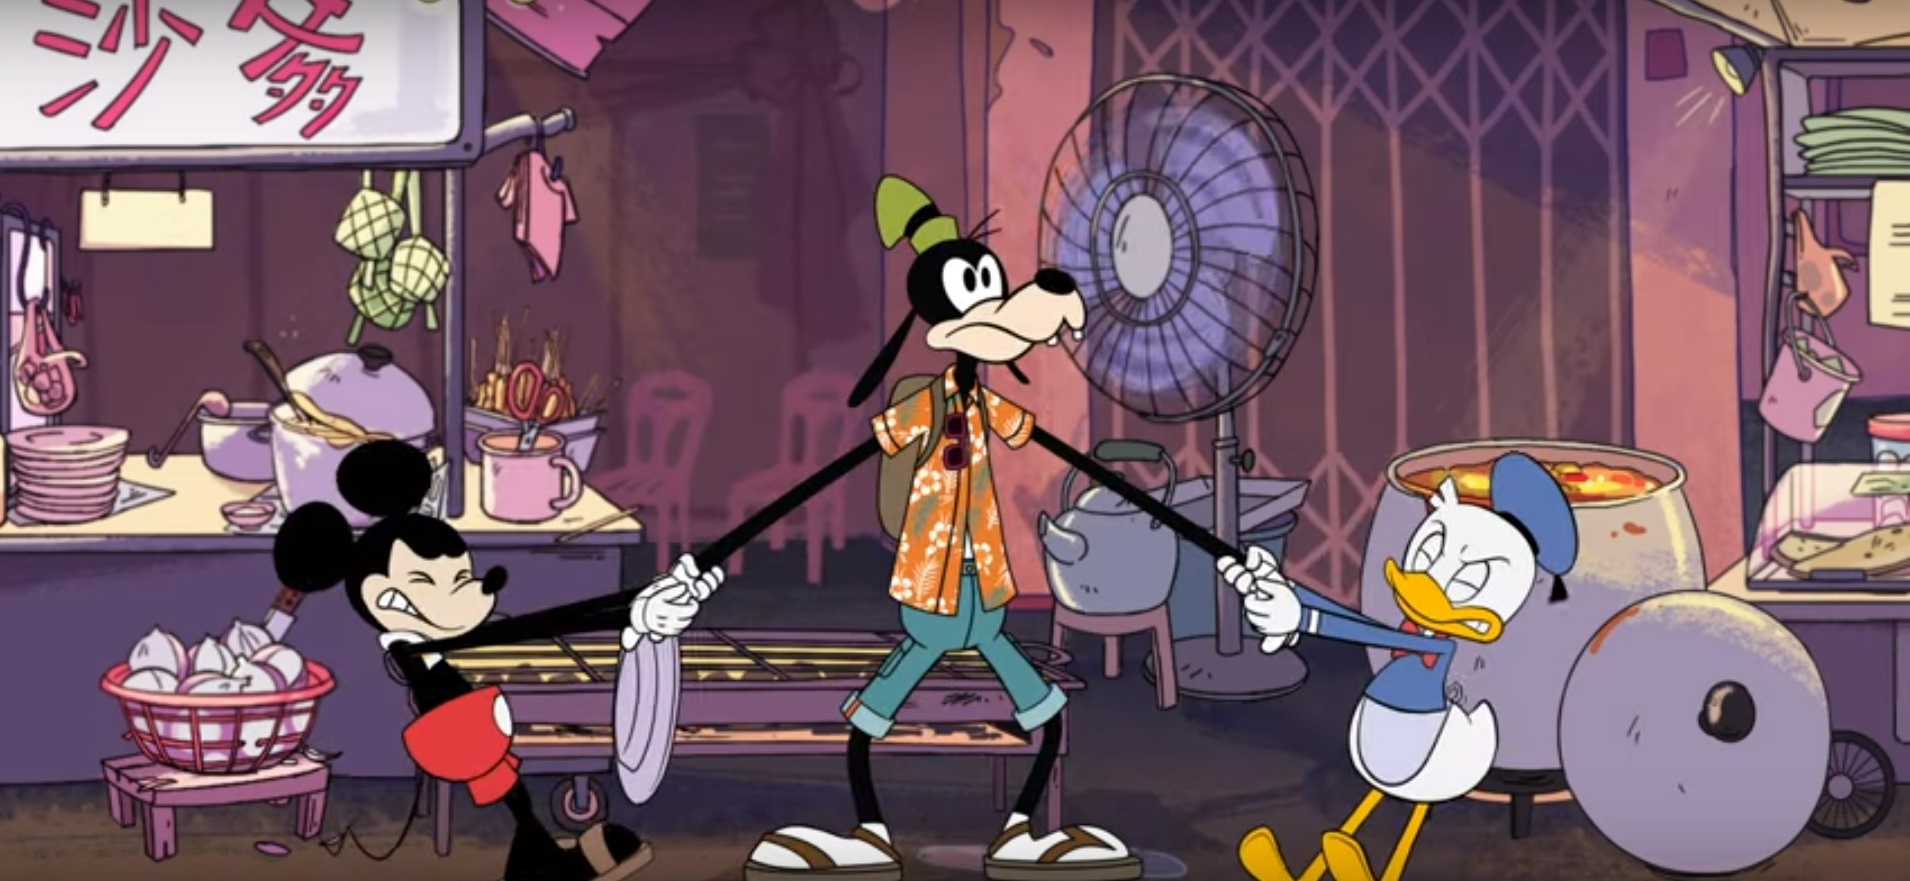 Mickey & Donald Pulling Goofy